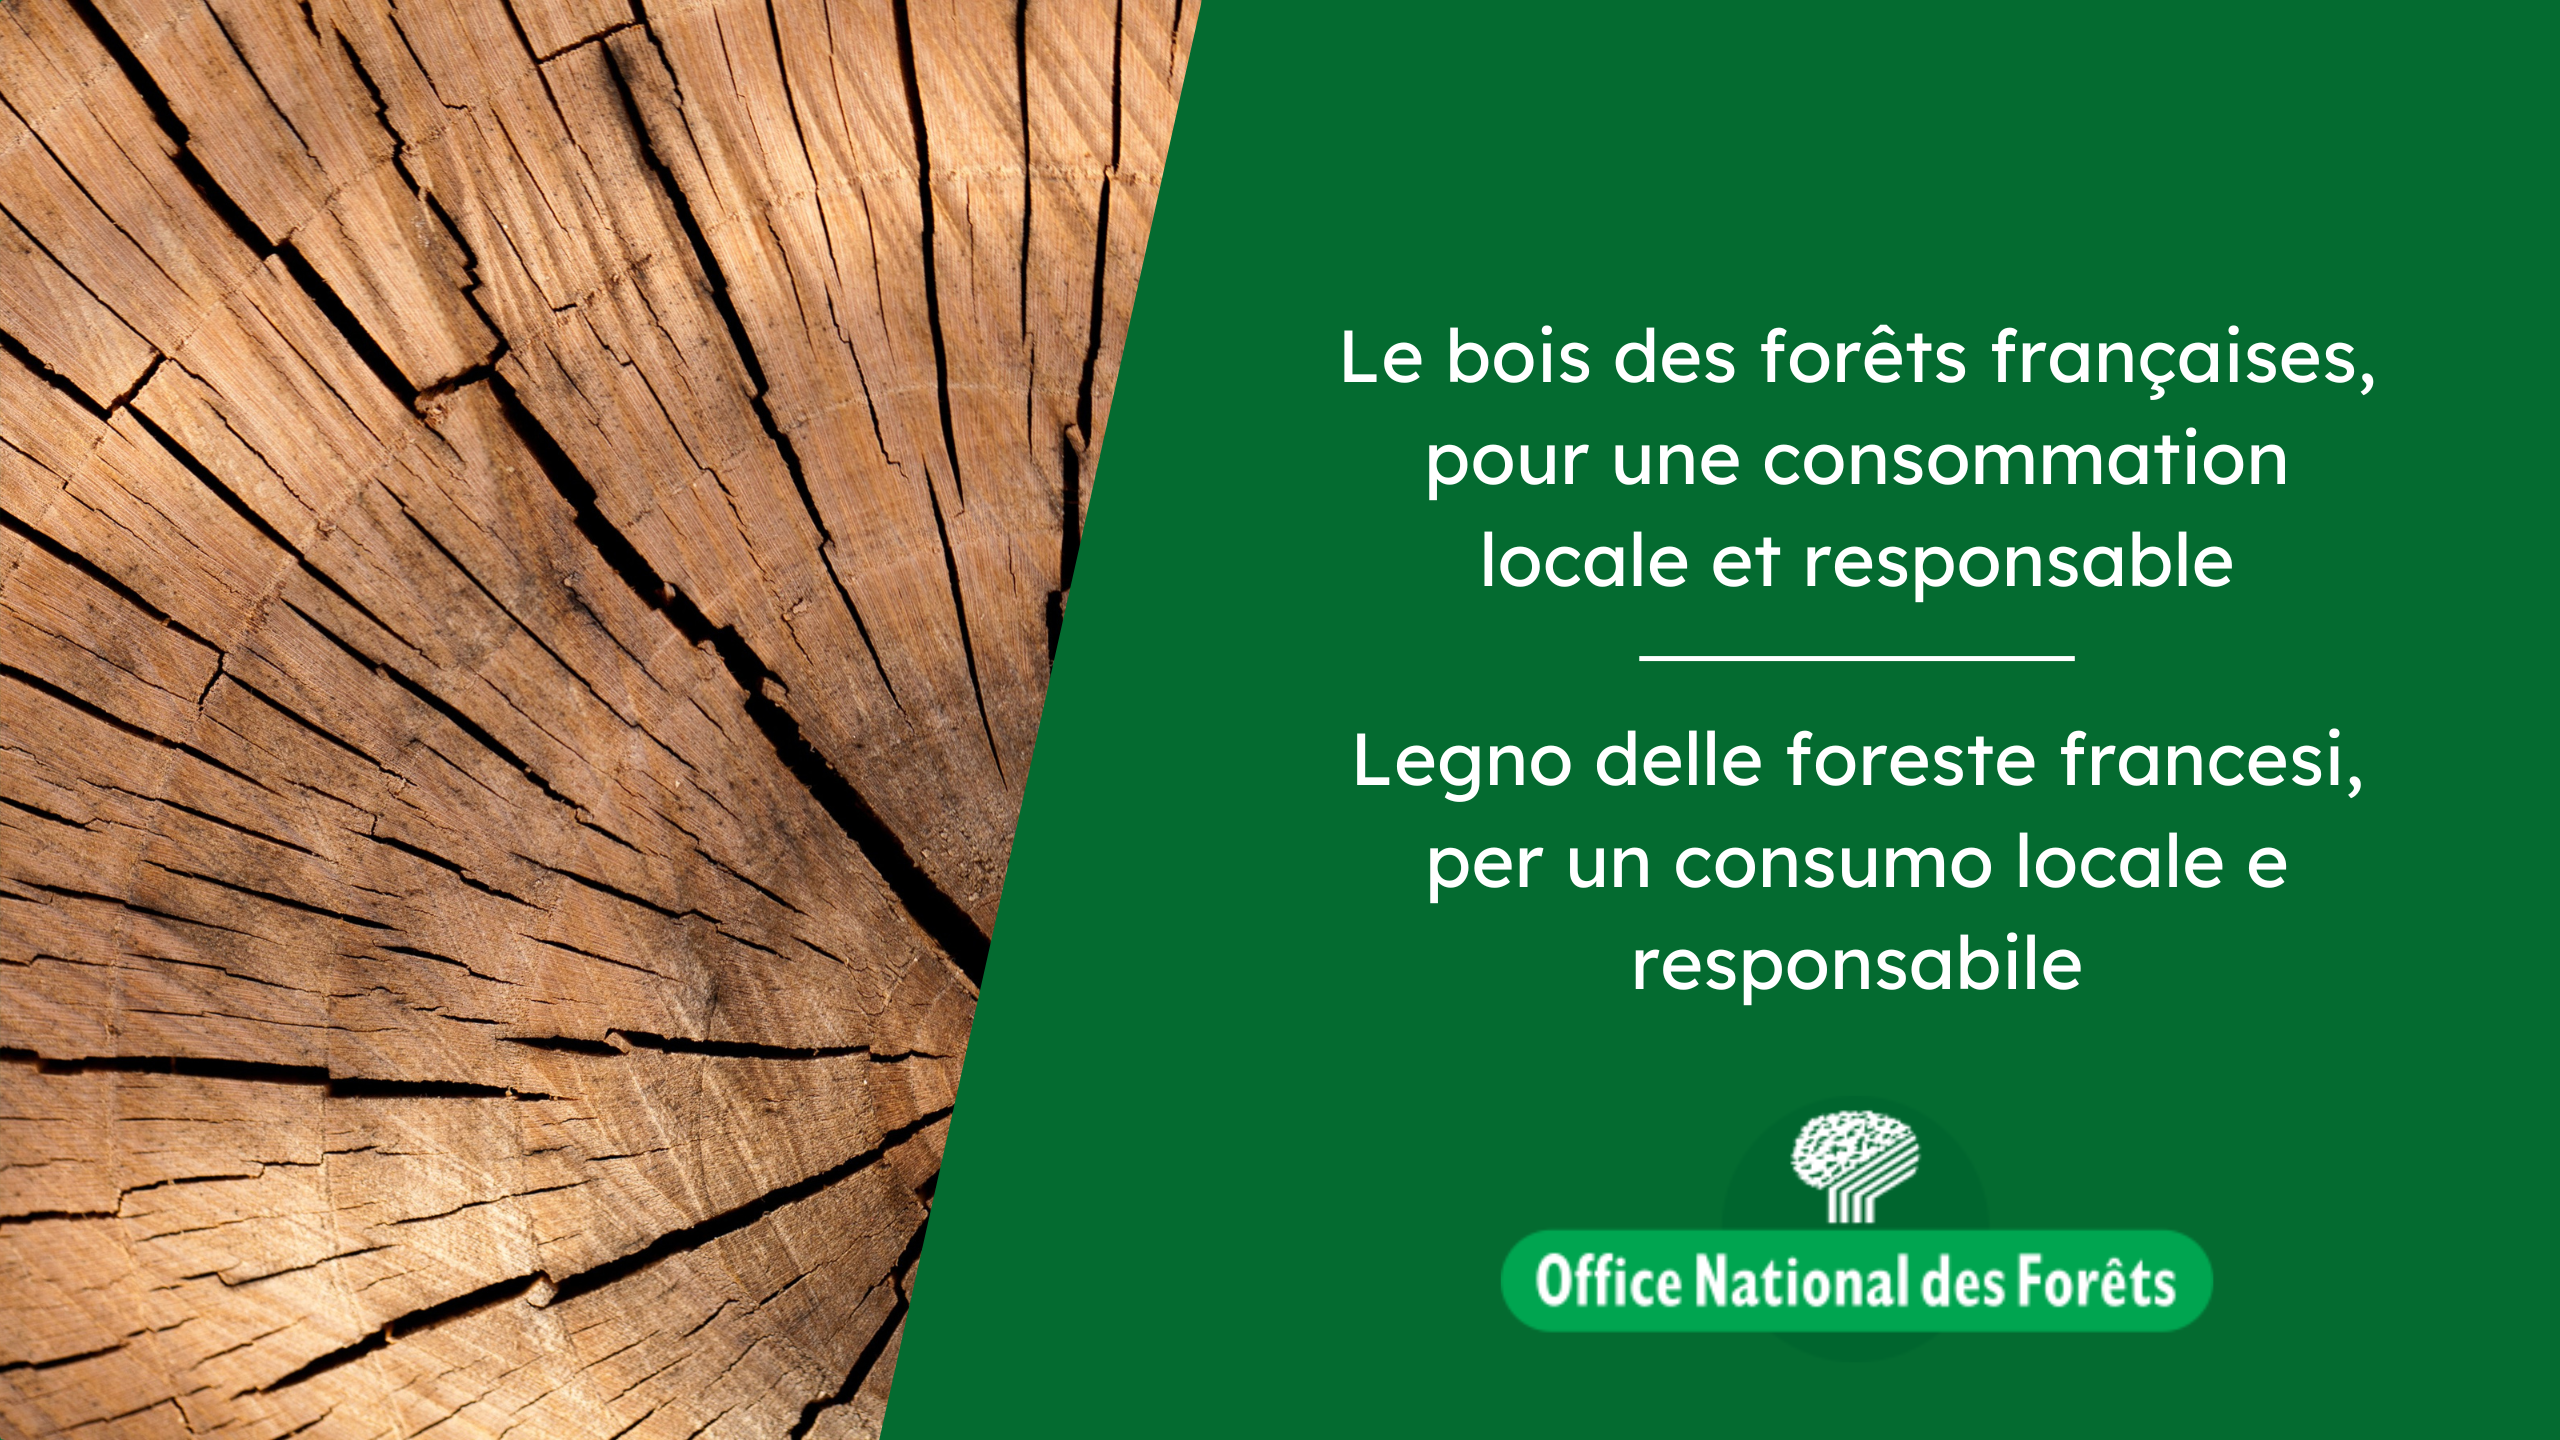 Legno delle foreste francesi, per un consumo locale e sostenibile